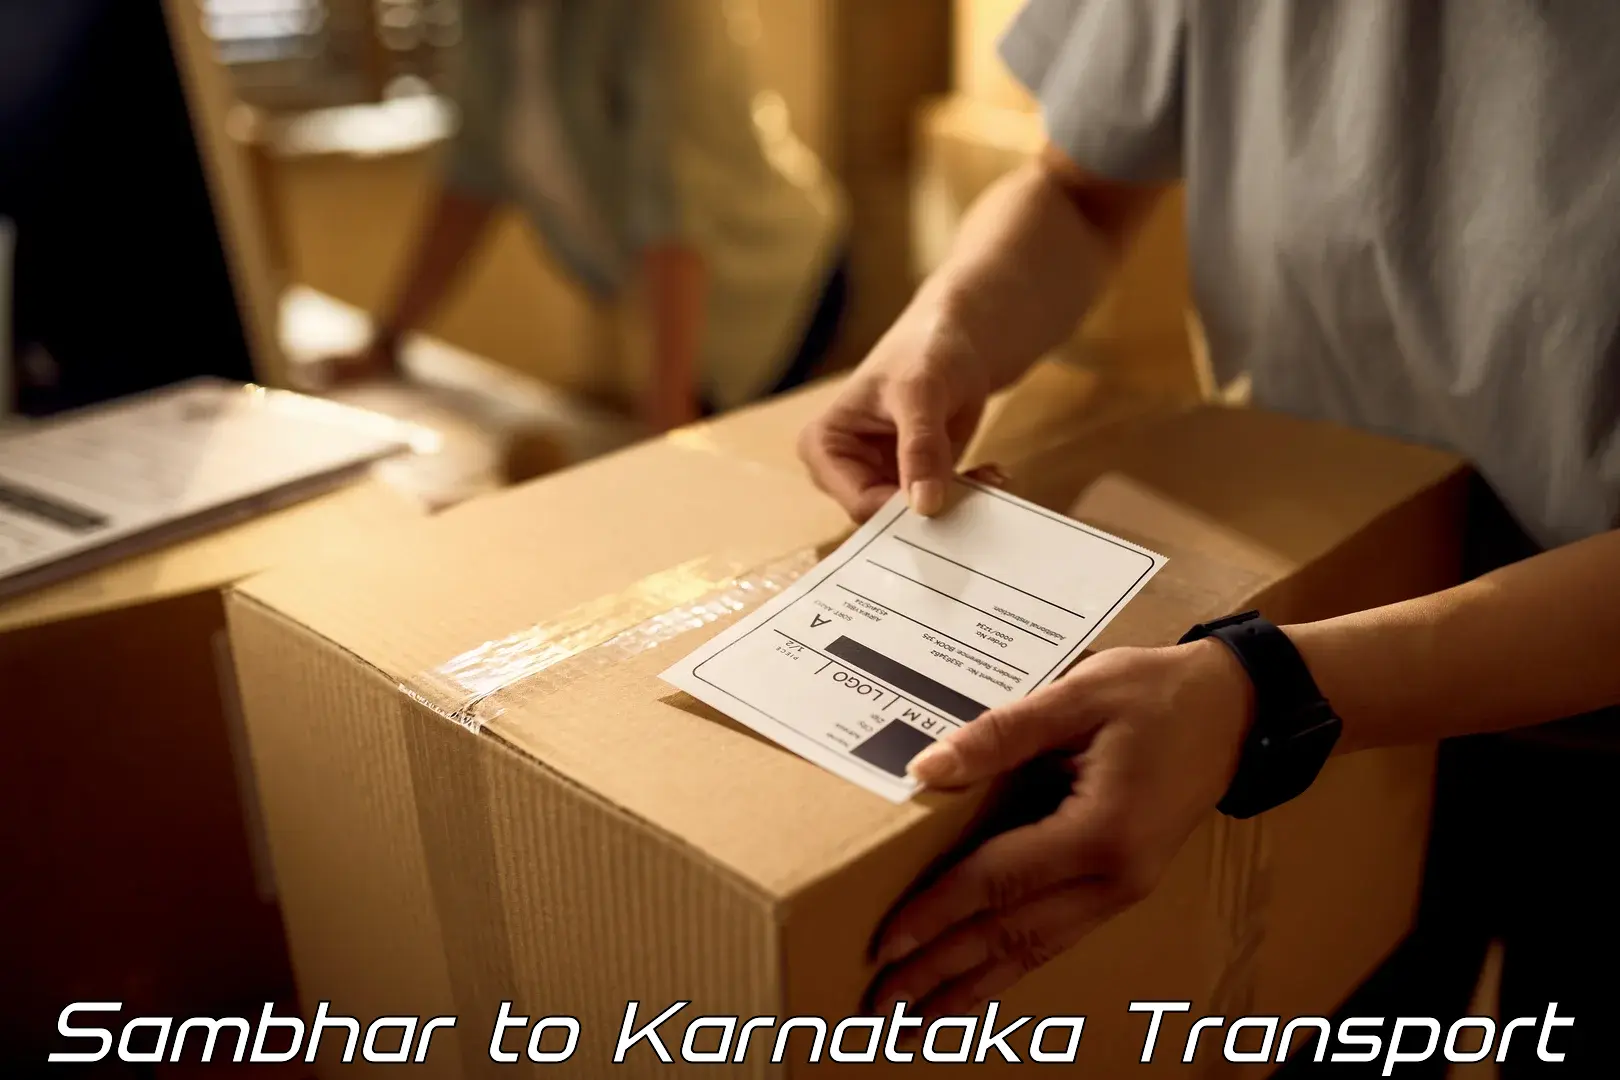 Furniture transport service Sambhar to Chikkanayakanahalli